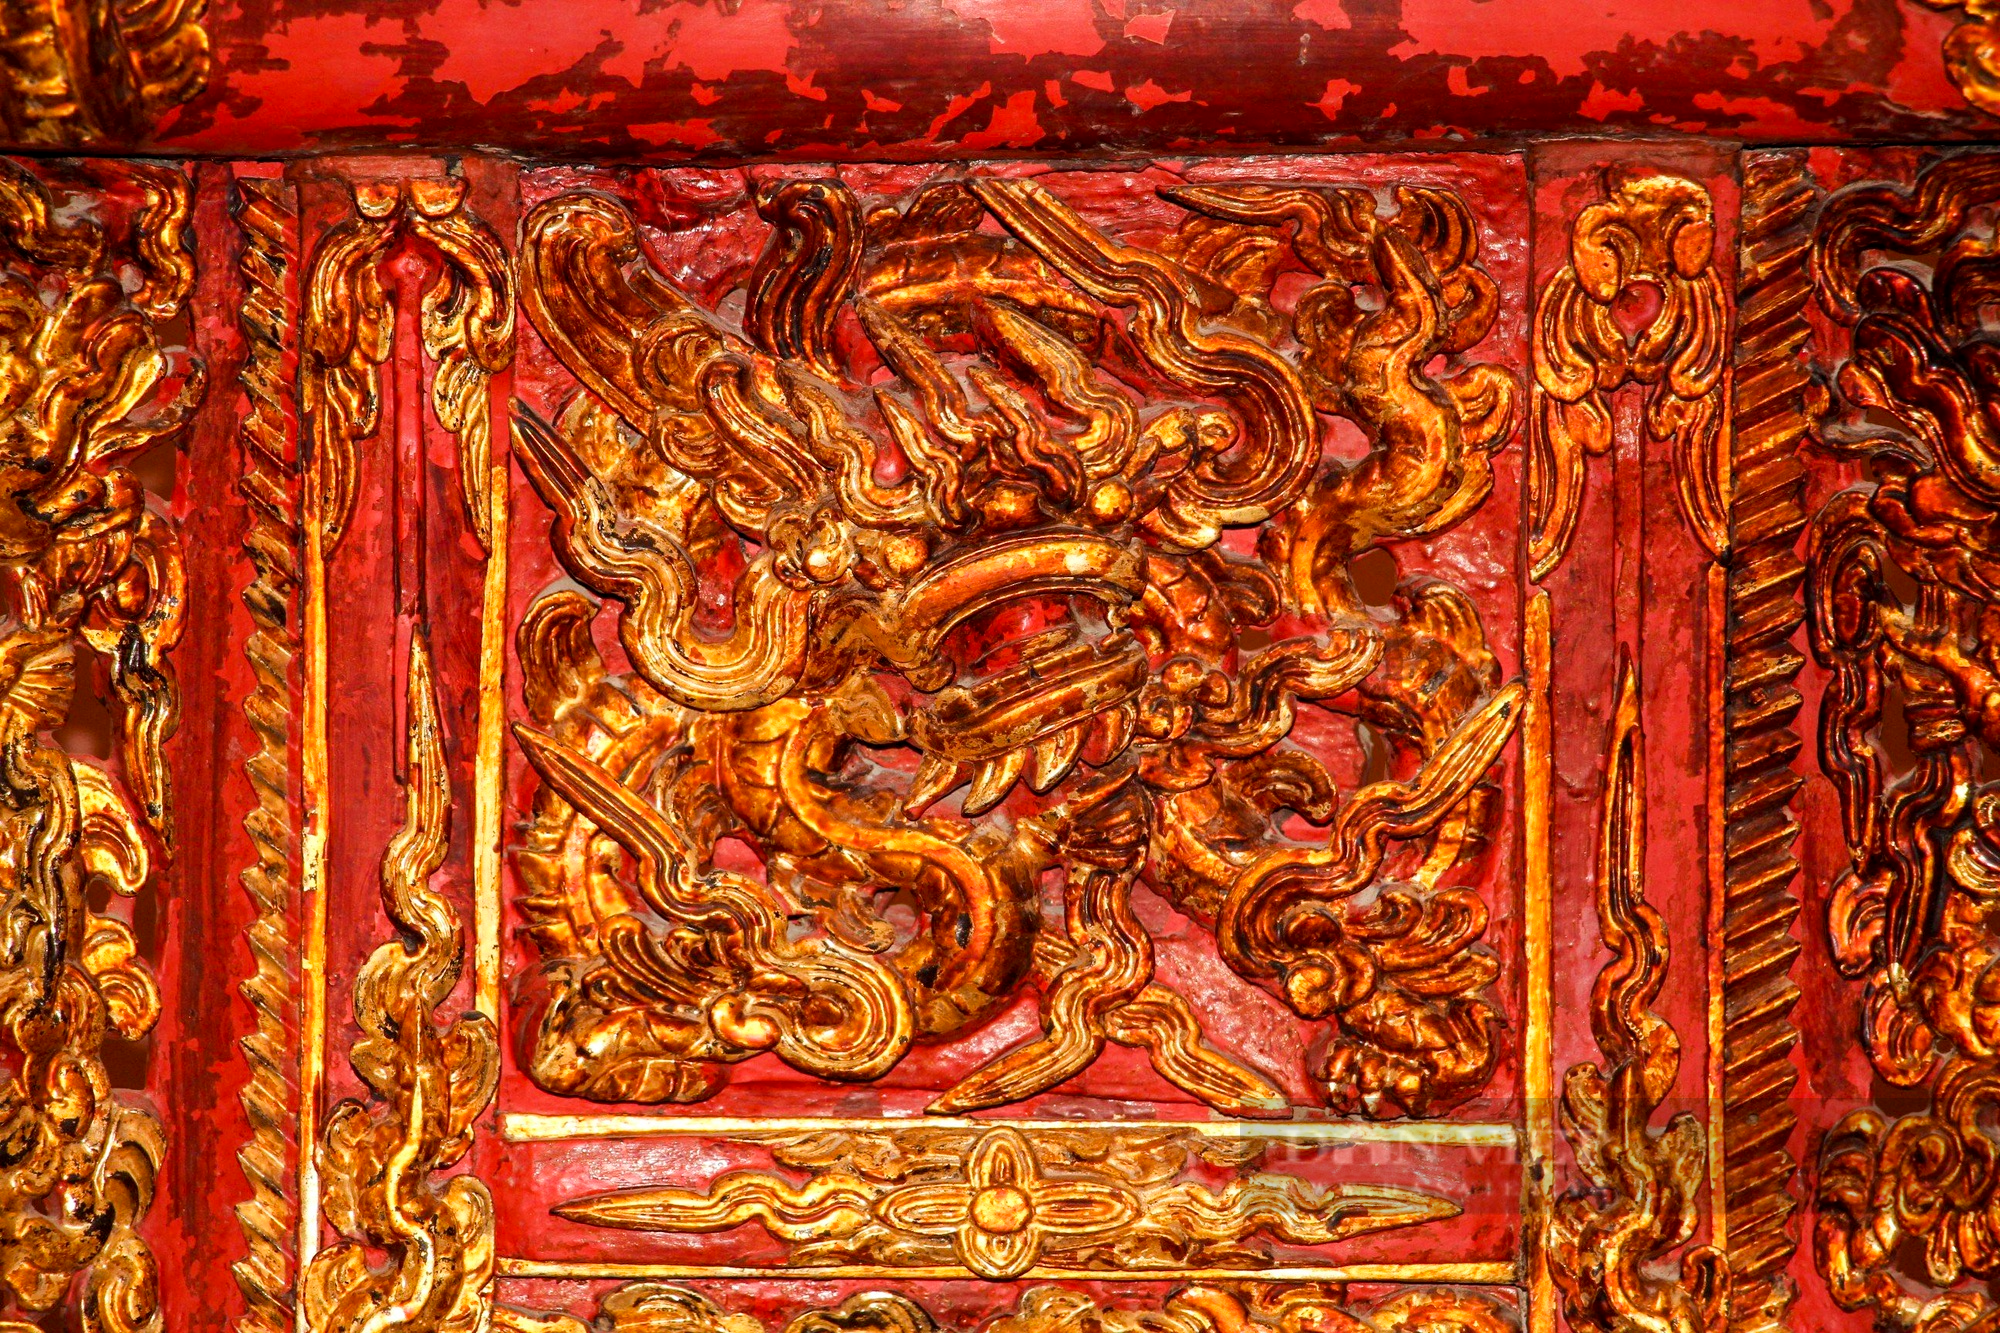 Ngai thờ sơn son thếp vàng 300 tuổi ở Thái Bình được công nhận là bảo vật quốc gia - Ảnh 4.